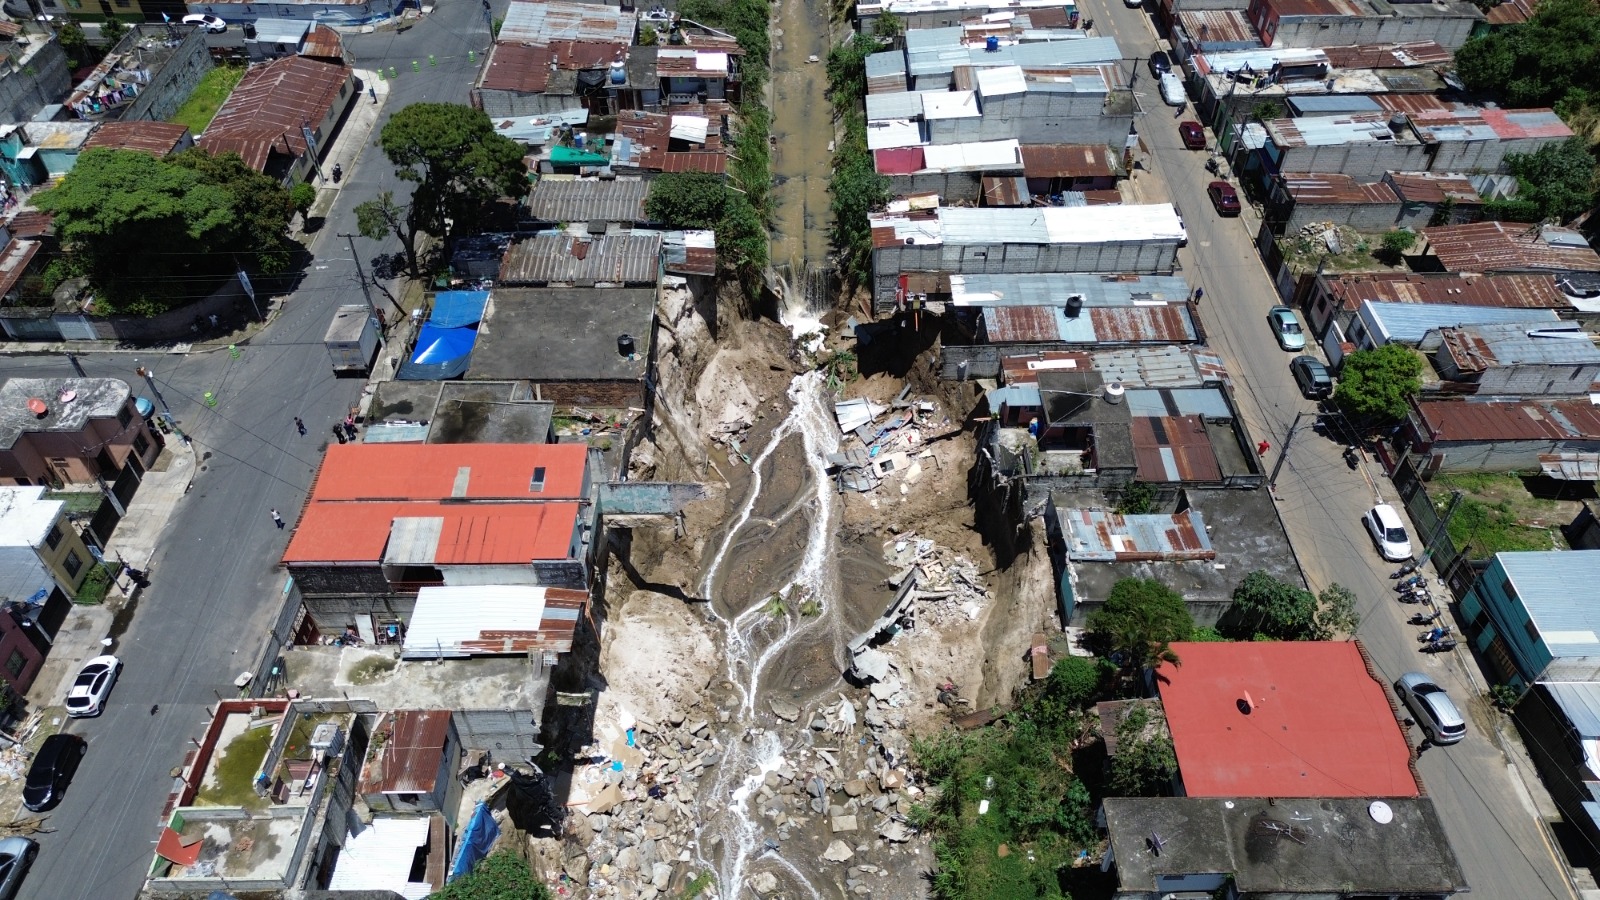 Vecinos de la 34 avenida, sector 4, Villa Hermosa I, San Miguel Petapa, han sido afectados por la crecida del río Pinula. Esta zona ha sido declarada de alto riesgo desde 2001, según Conred. (Foto Prensa Libre: Elmer Vargas).